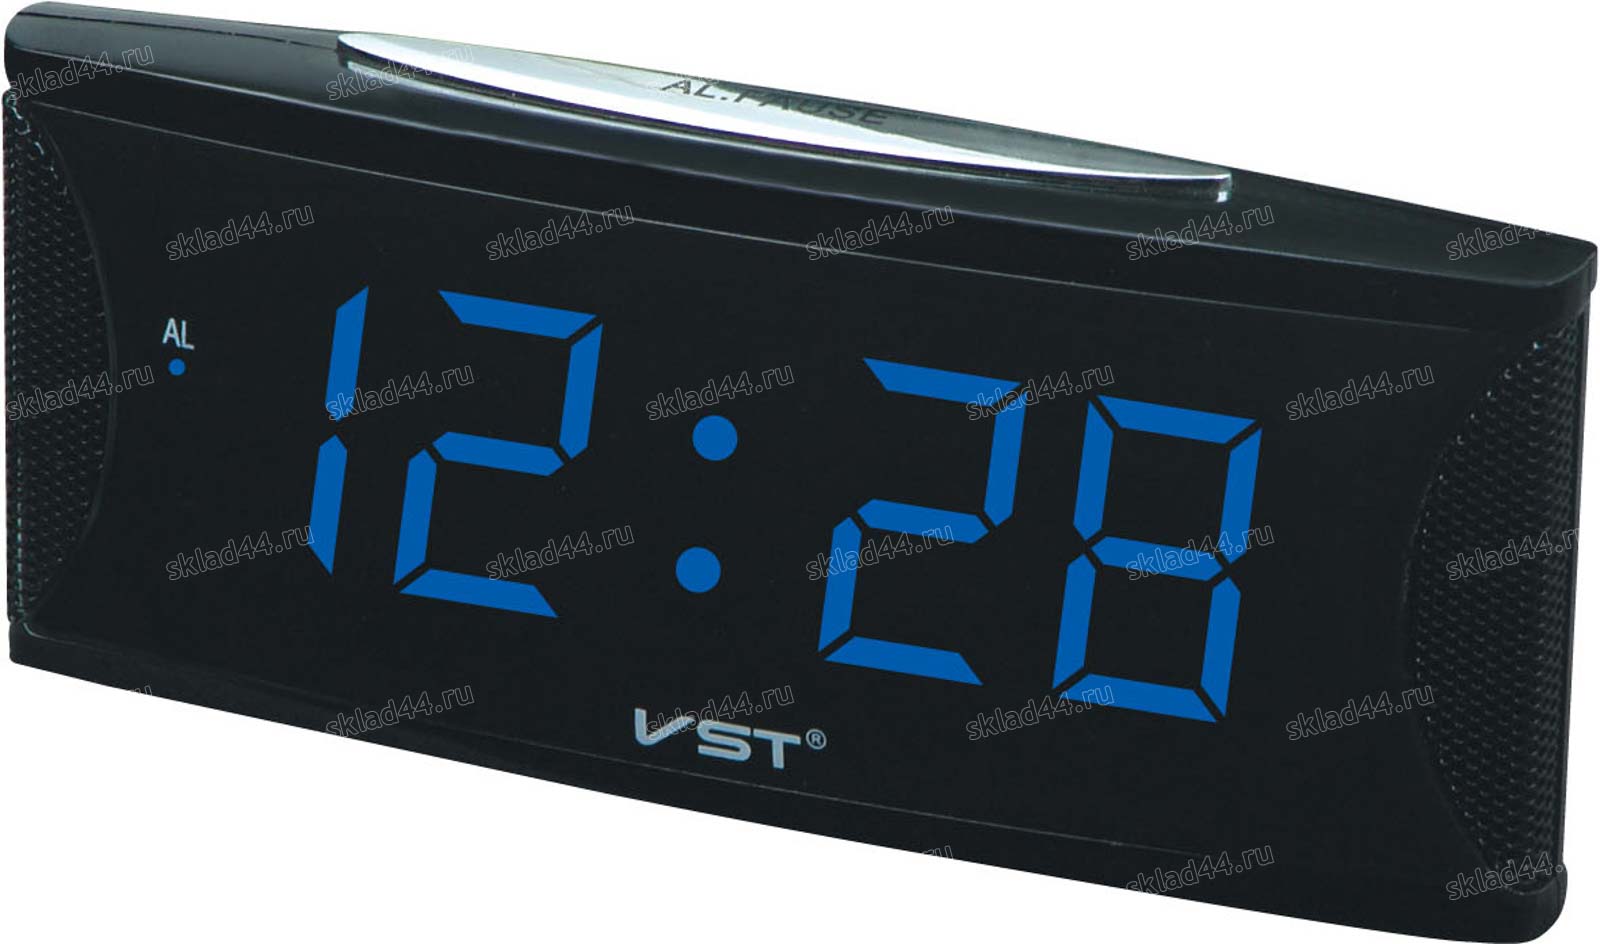 Часы vst видео. Электронные часы VST 719-4 зеленый. VST 719-5. Радиочасы VST 719. Часы настольные VST 719-5 синие.